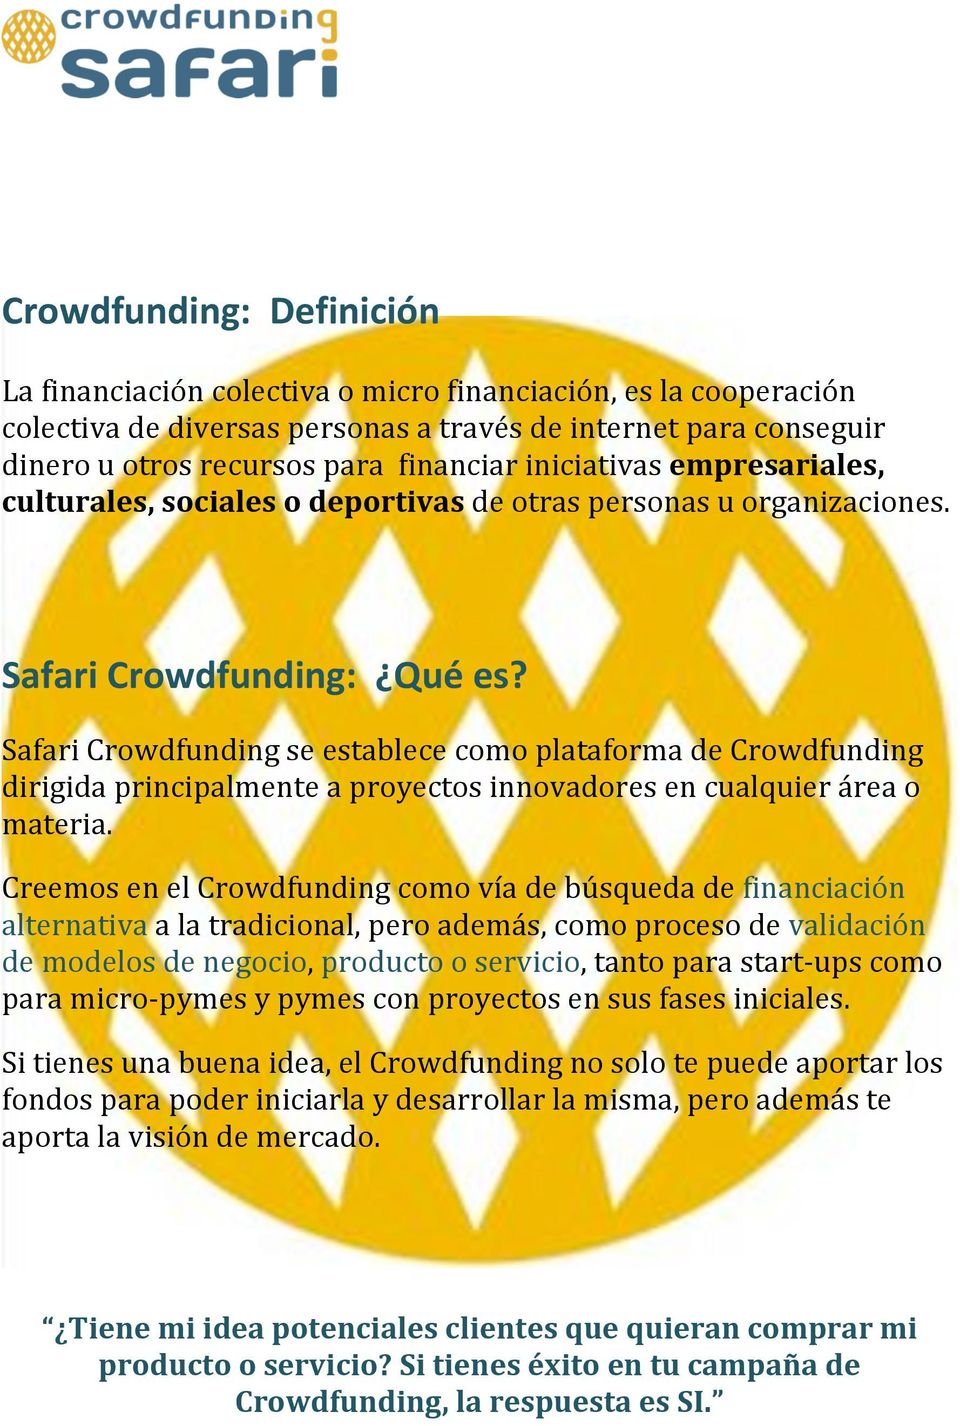 Safari Crowdfunding se establece como plataforma de Crowdfunding dirigida principalmente a proyectos innovadores en cualquier área o materia.